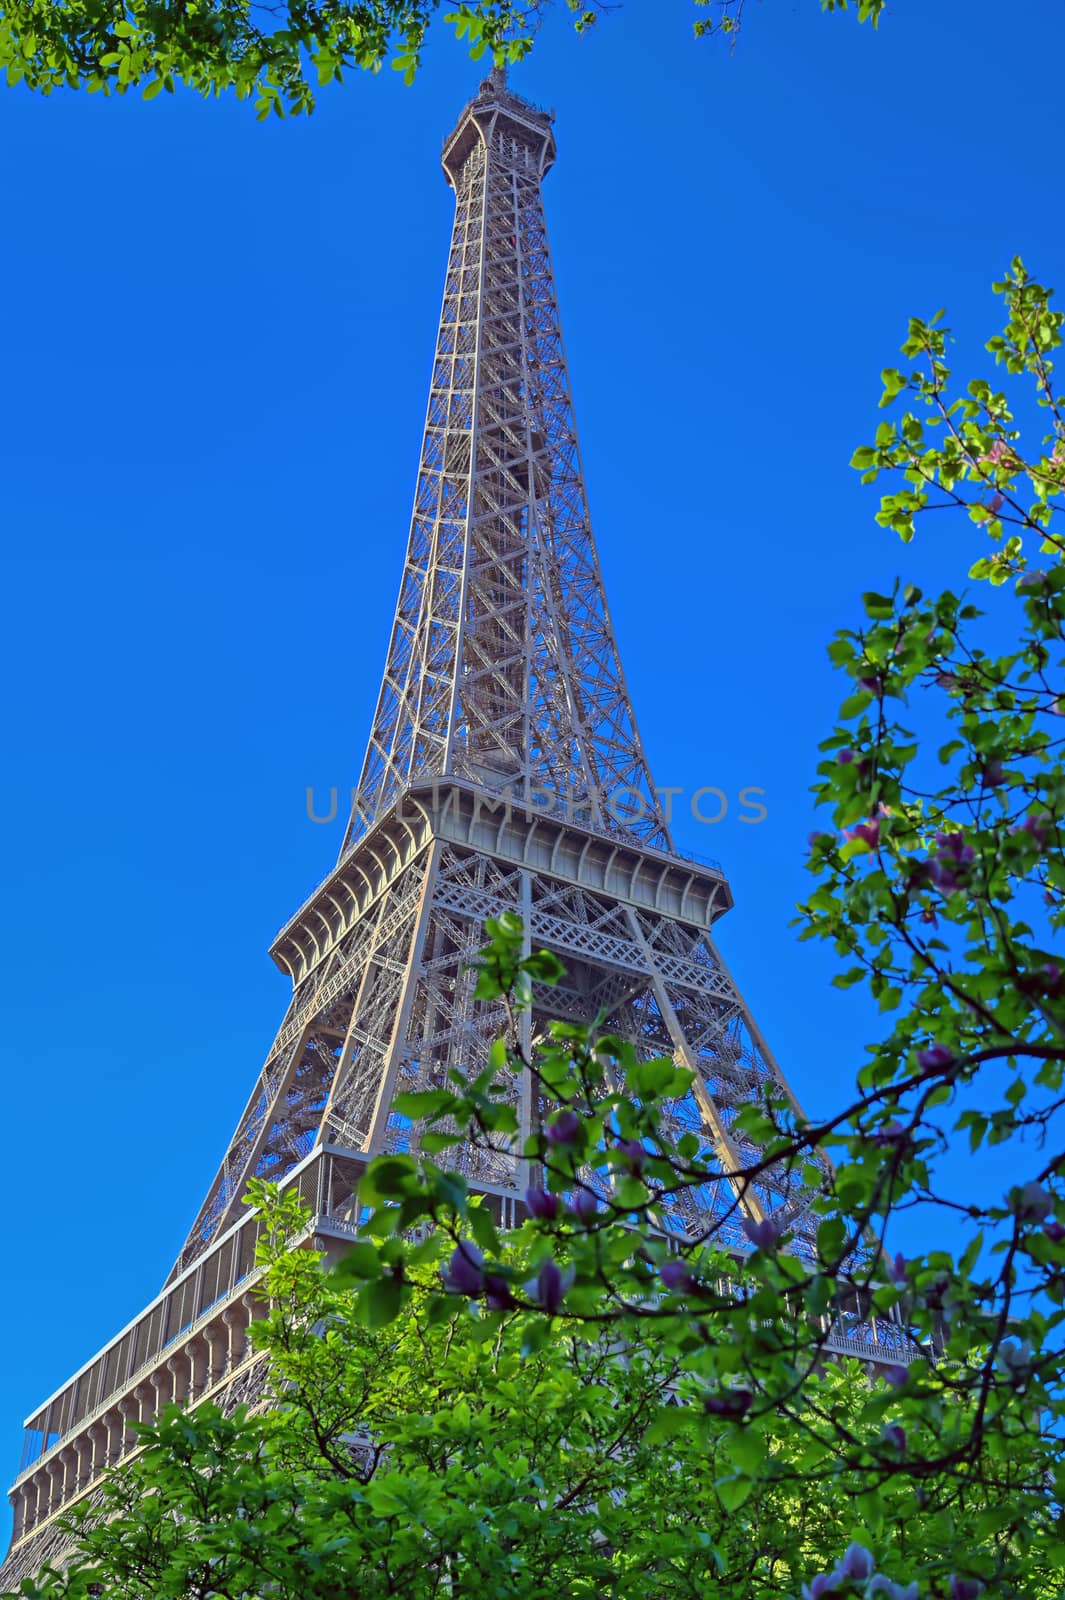 Eiffel Tower in Paris, France by jbyard22